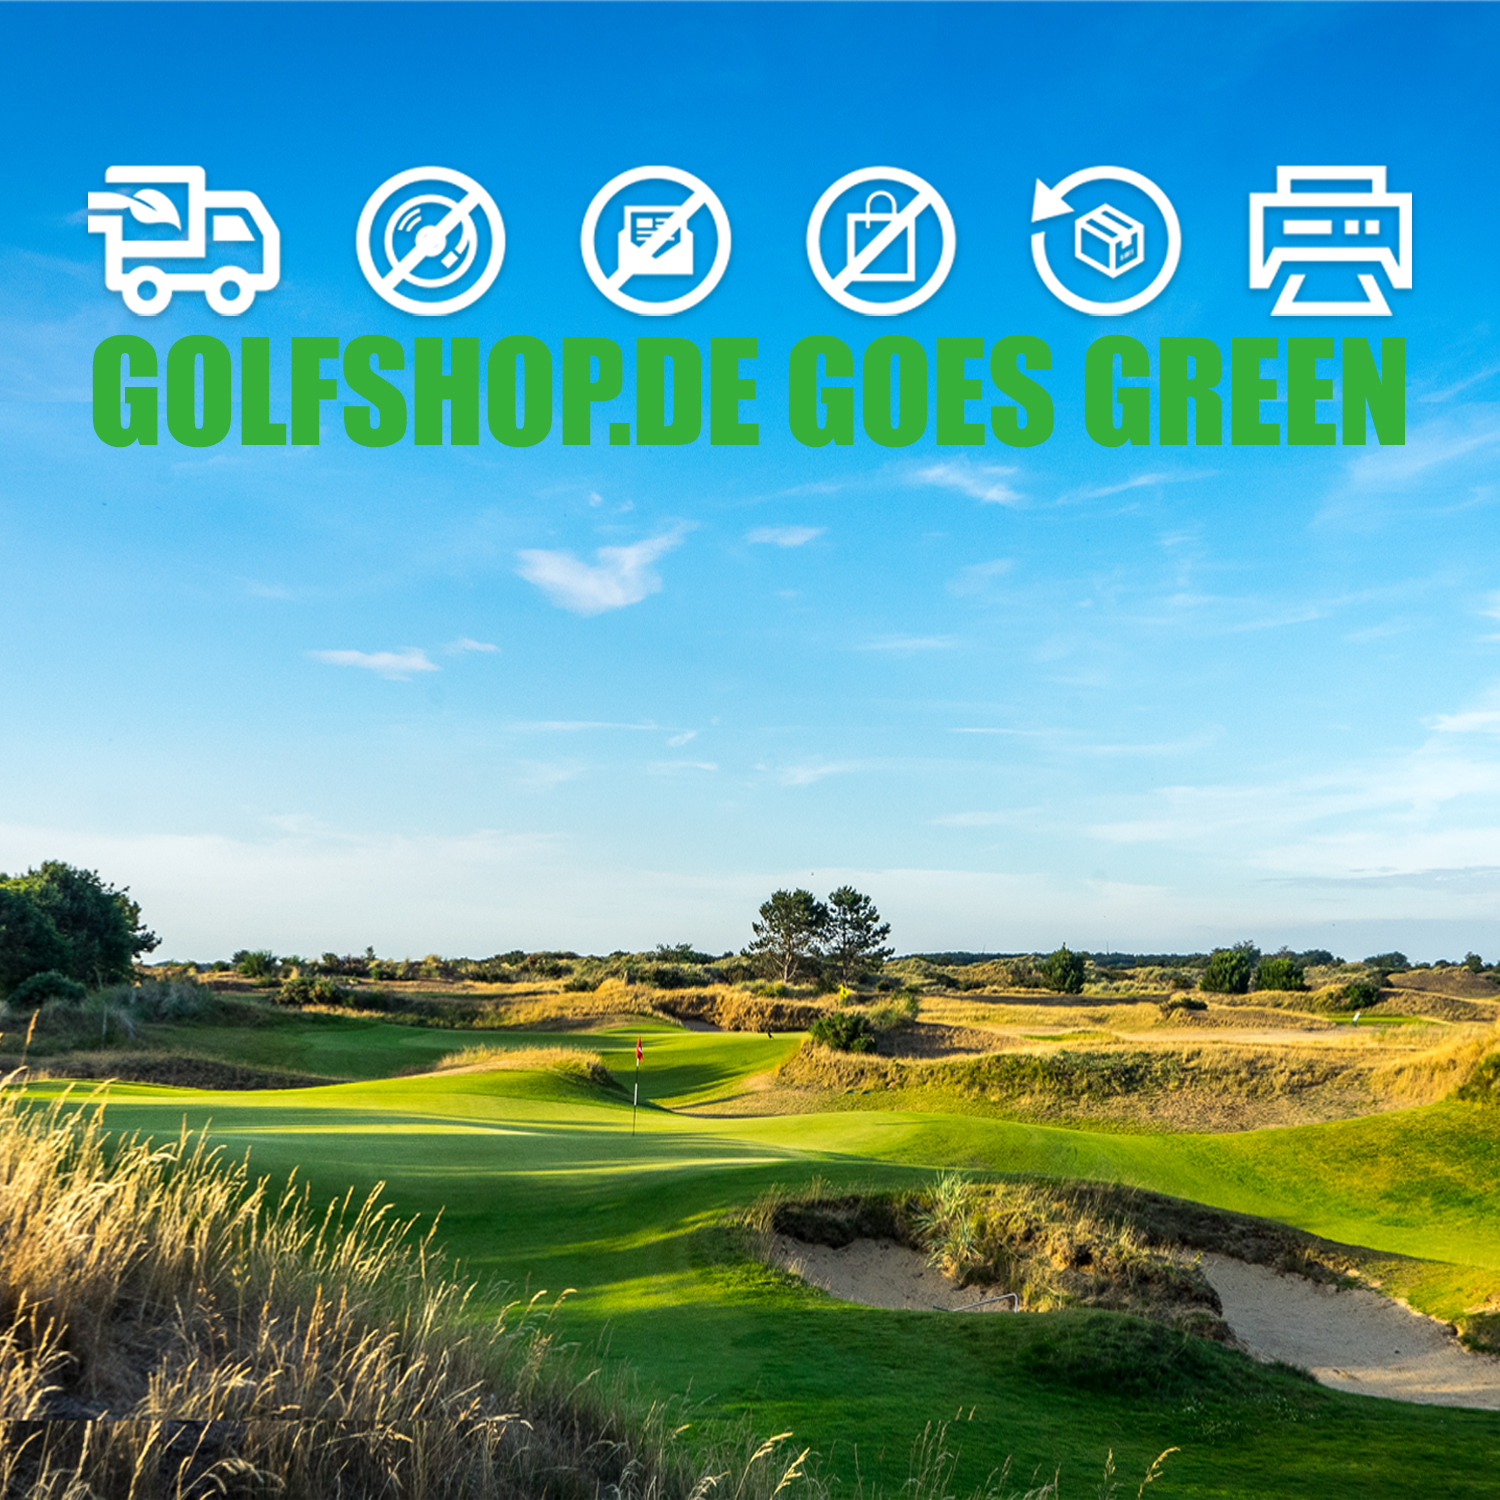 GOLFSHOP GOES GREEN 2020 Nouvelles Golfshop.de